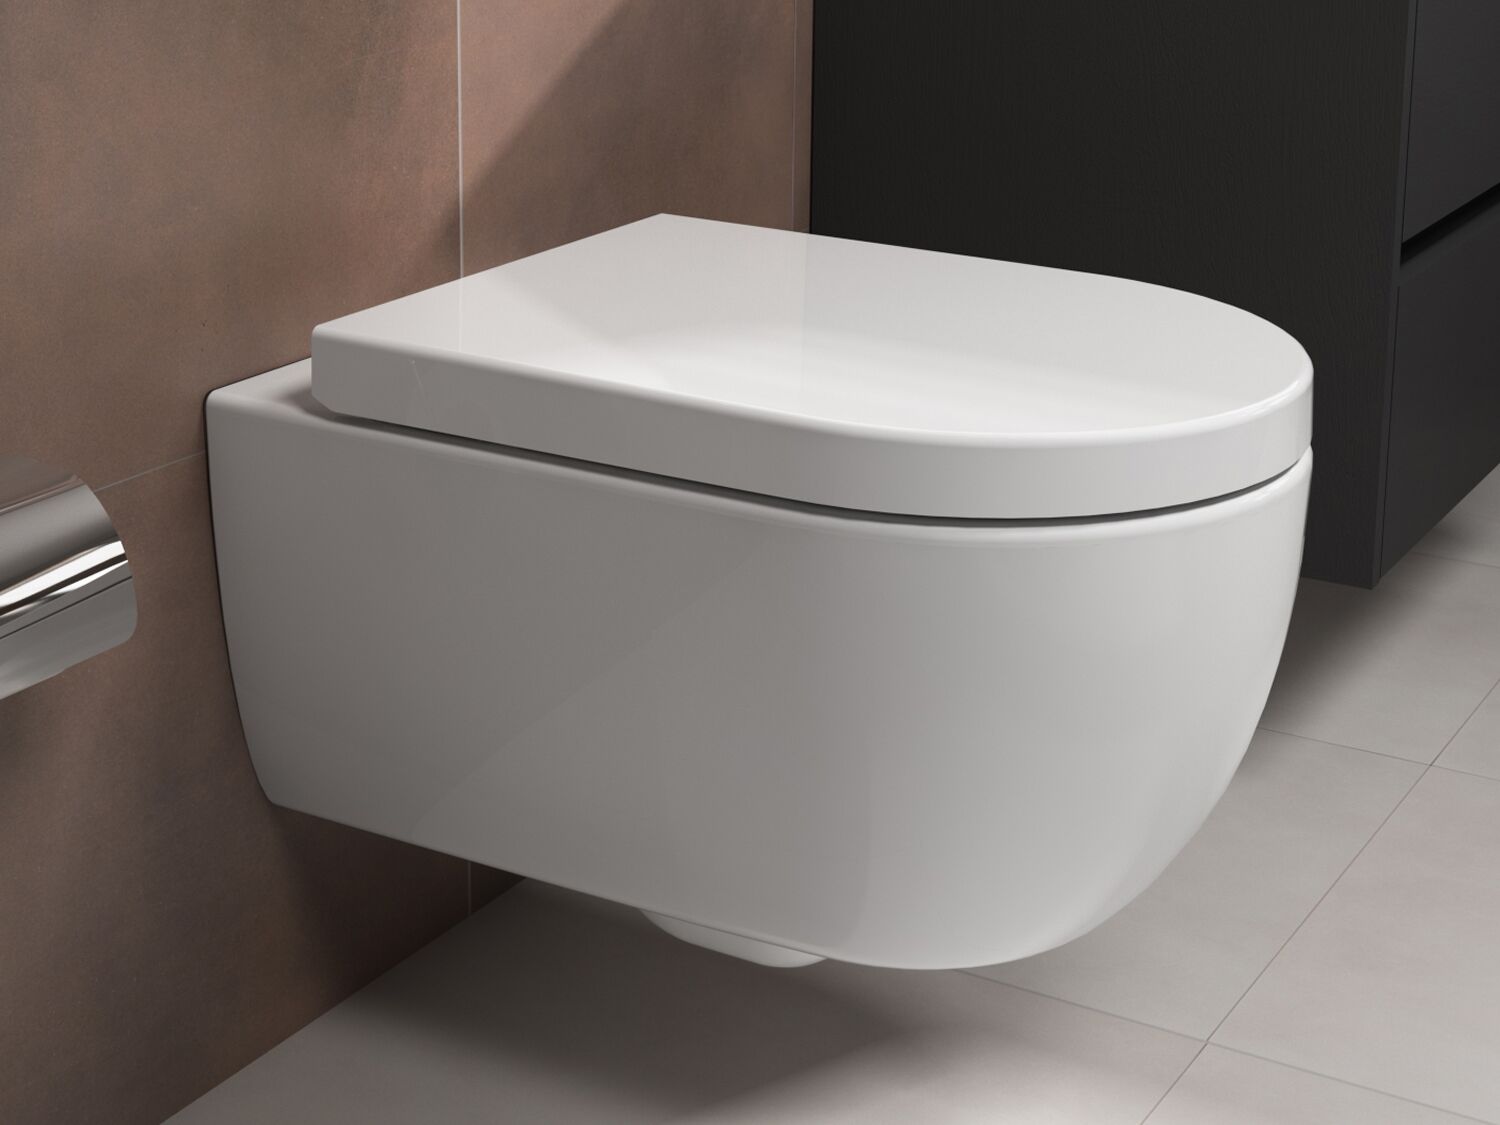 Sp&uuml;lrandloses WC - Design H&auml;nge-WC Toilette abnhembarer softclose Toiletten-Sitz Wand-WC - kurze Variante